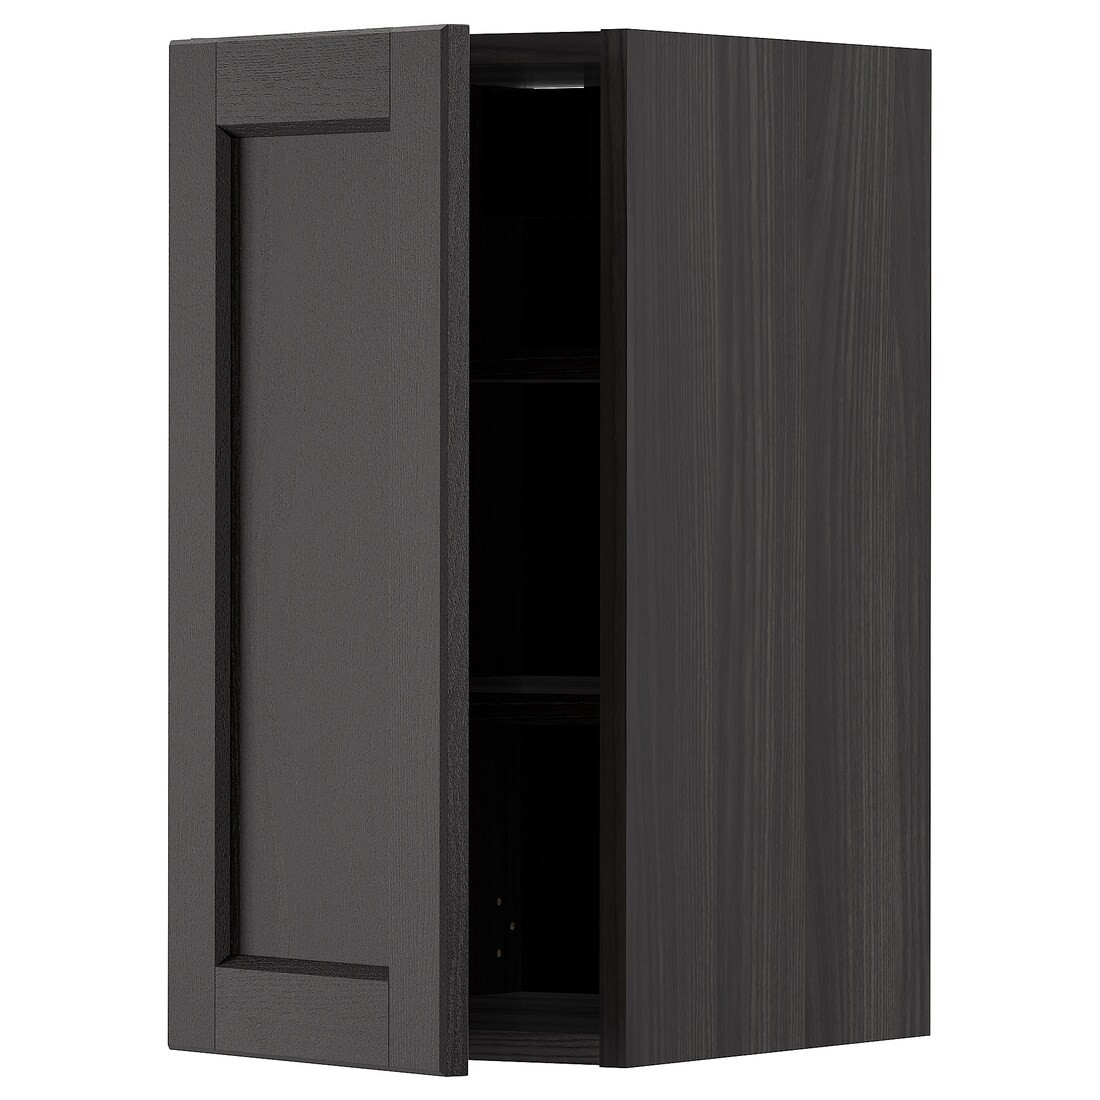 IKEA METOD МЕТОД Шкаф навесной с полками, черный / Lerhyttan черная морилка, 30x60 см 49465210 494.652.10